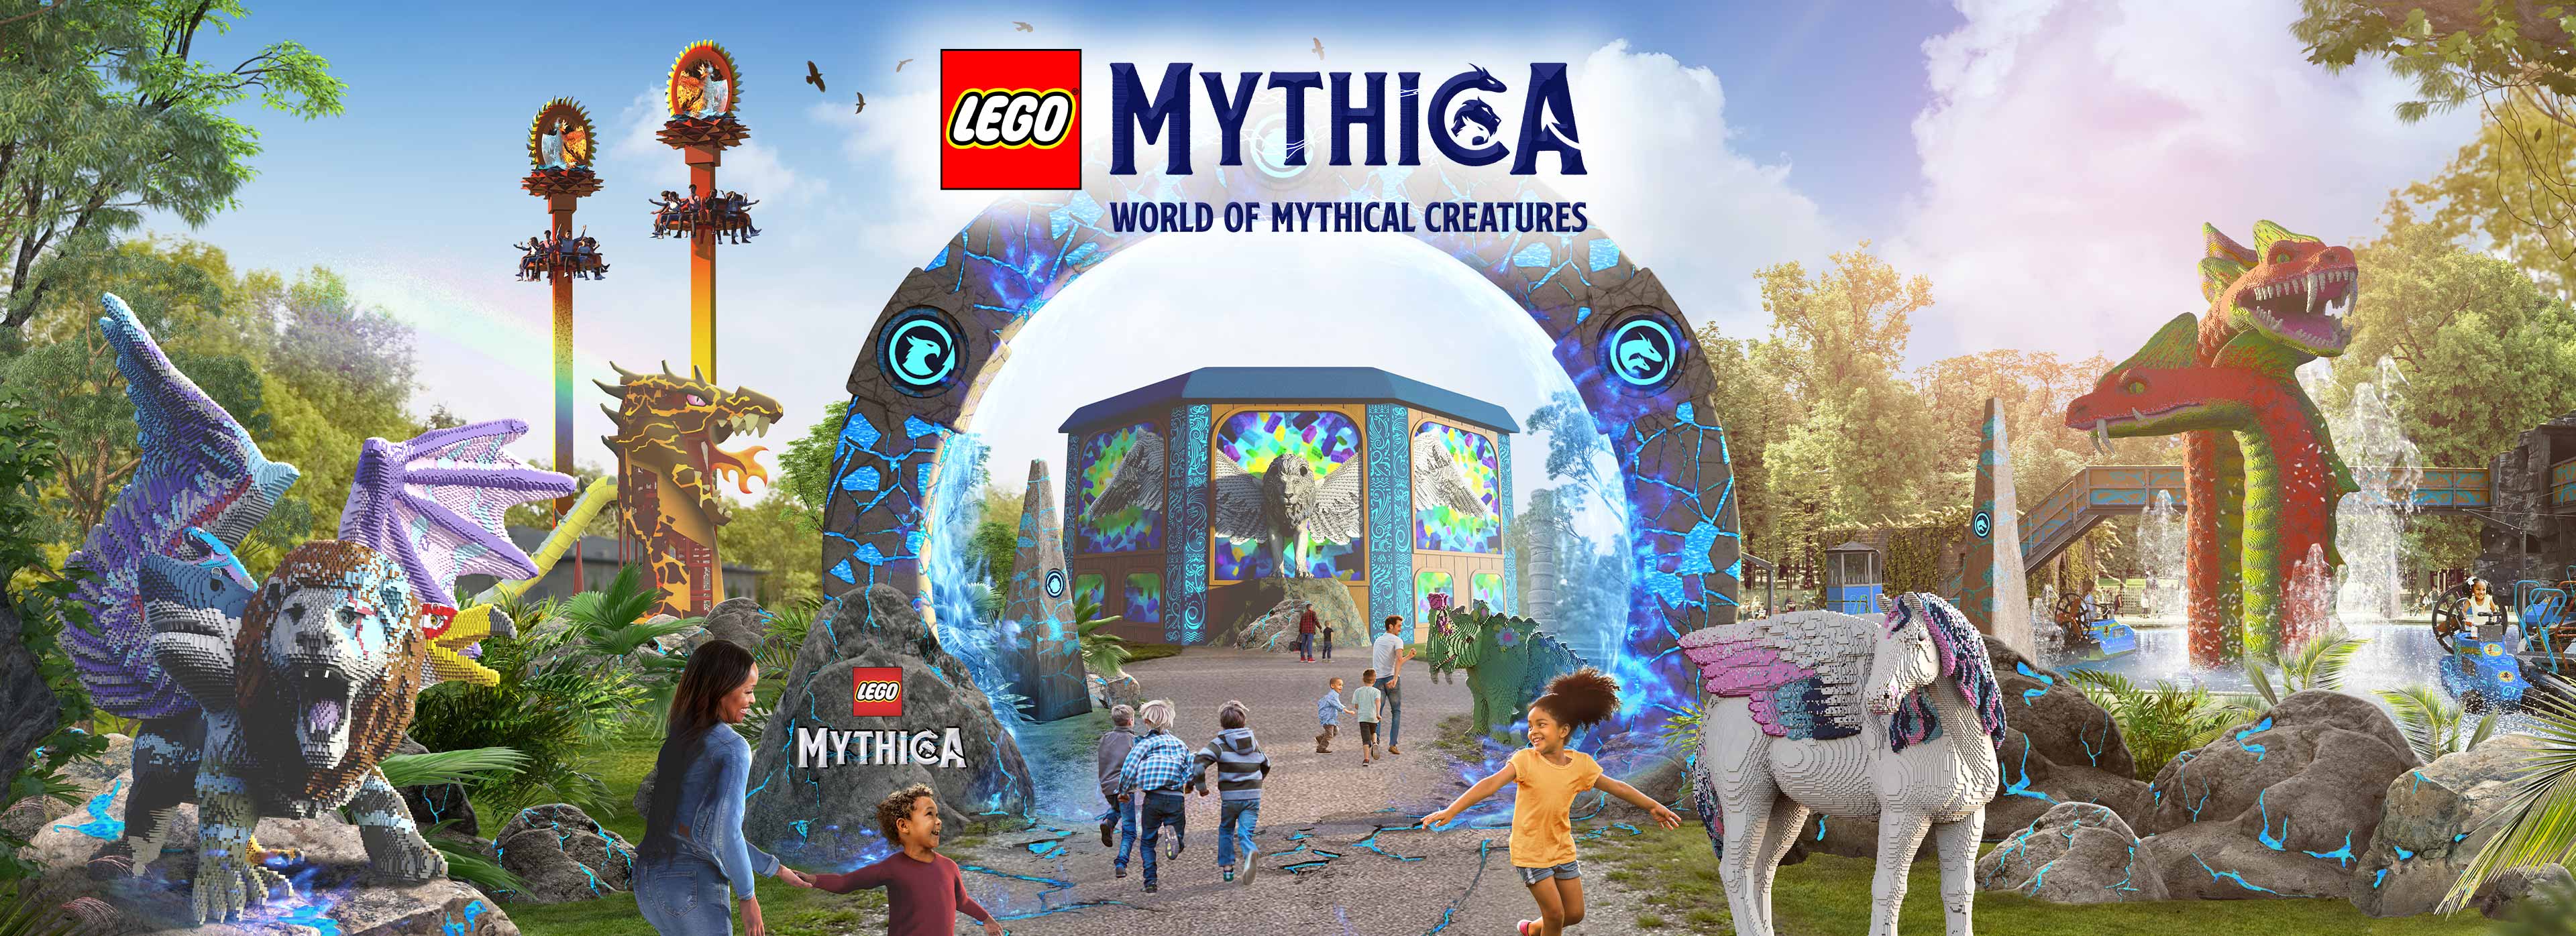 LEGO MYTHICA at the LEGOLAND Windsor Resort